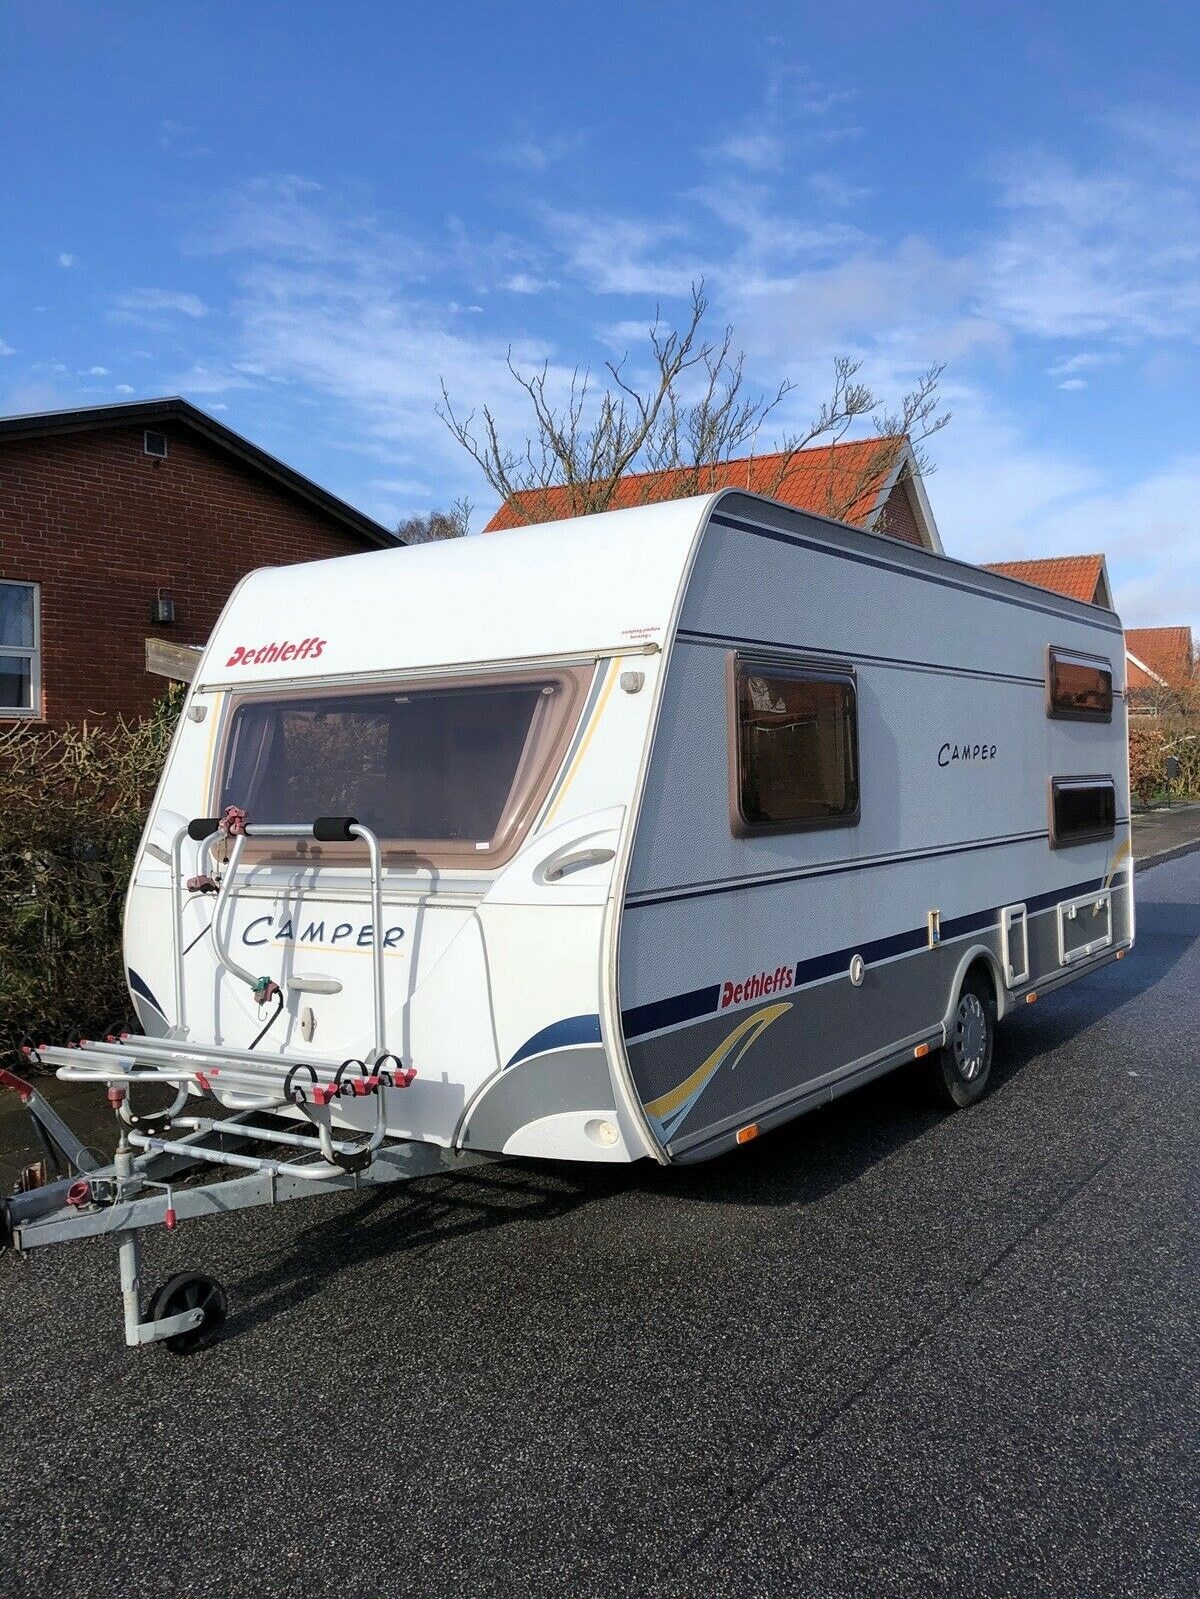 Lige nu har Uffe denne nysynede campingvogn fra Dethleffs Dethleffs til salg i Viborg. For 75.000 kroner kan den blive din